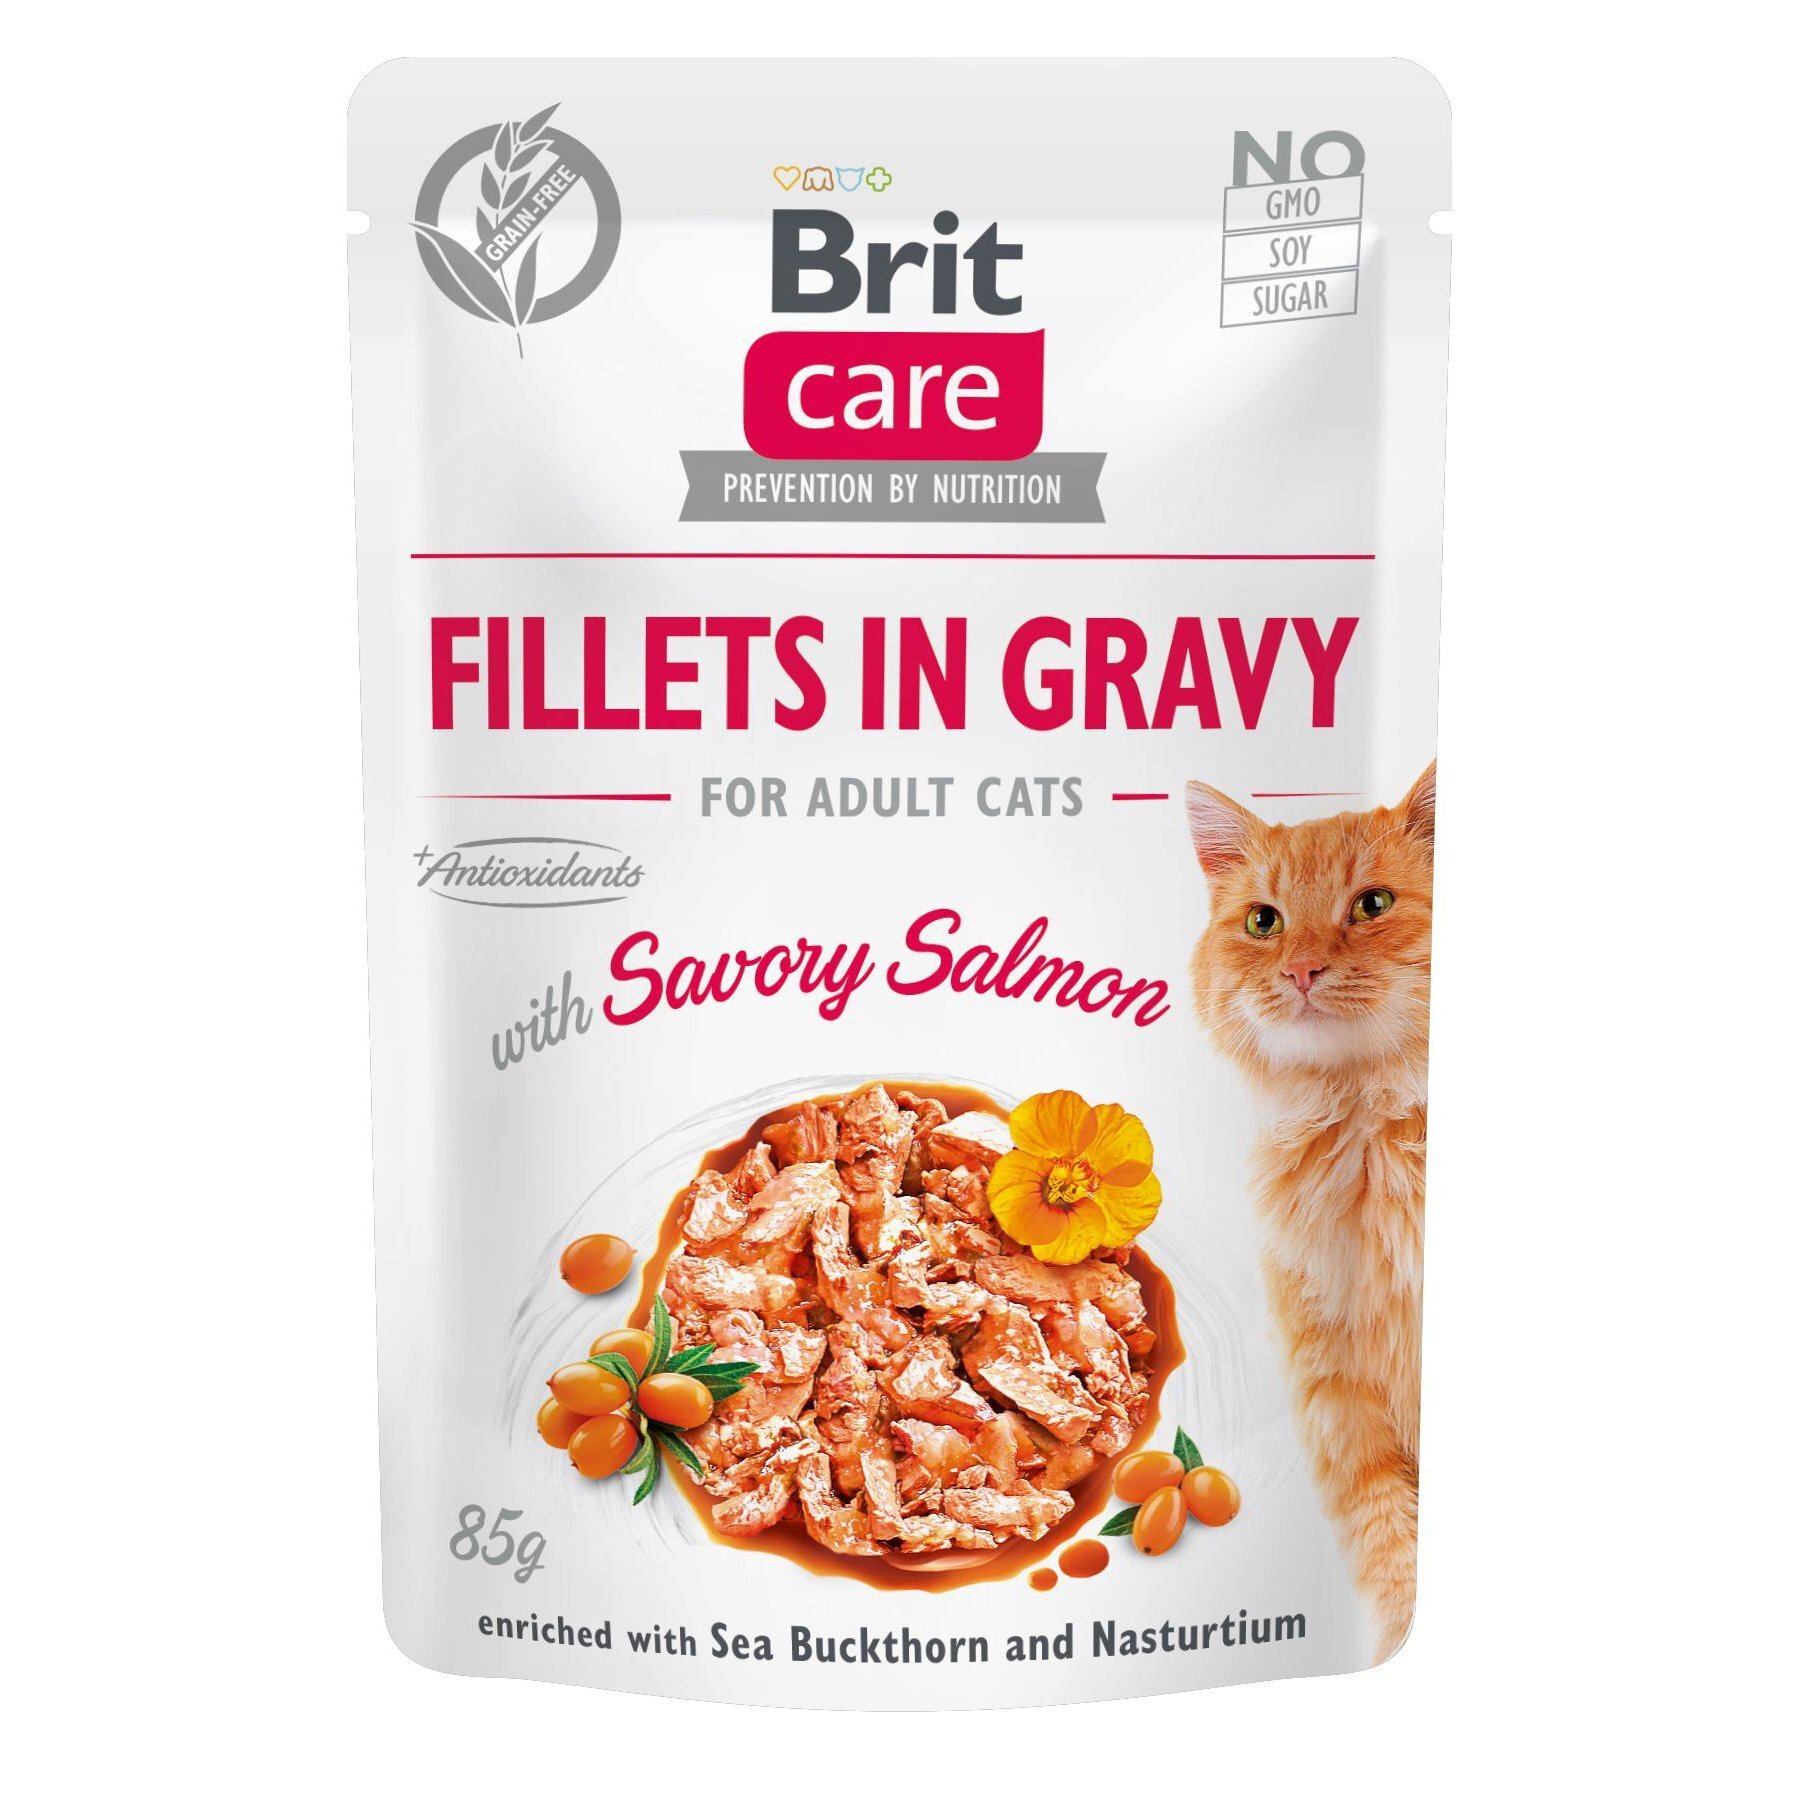 Влажный корм для кошек Brit Care Cat pouch 85г филе в соусе пикантный лосось фото 1